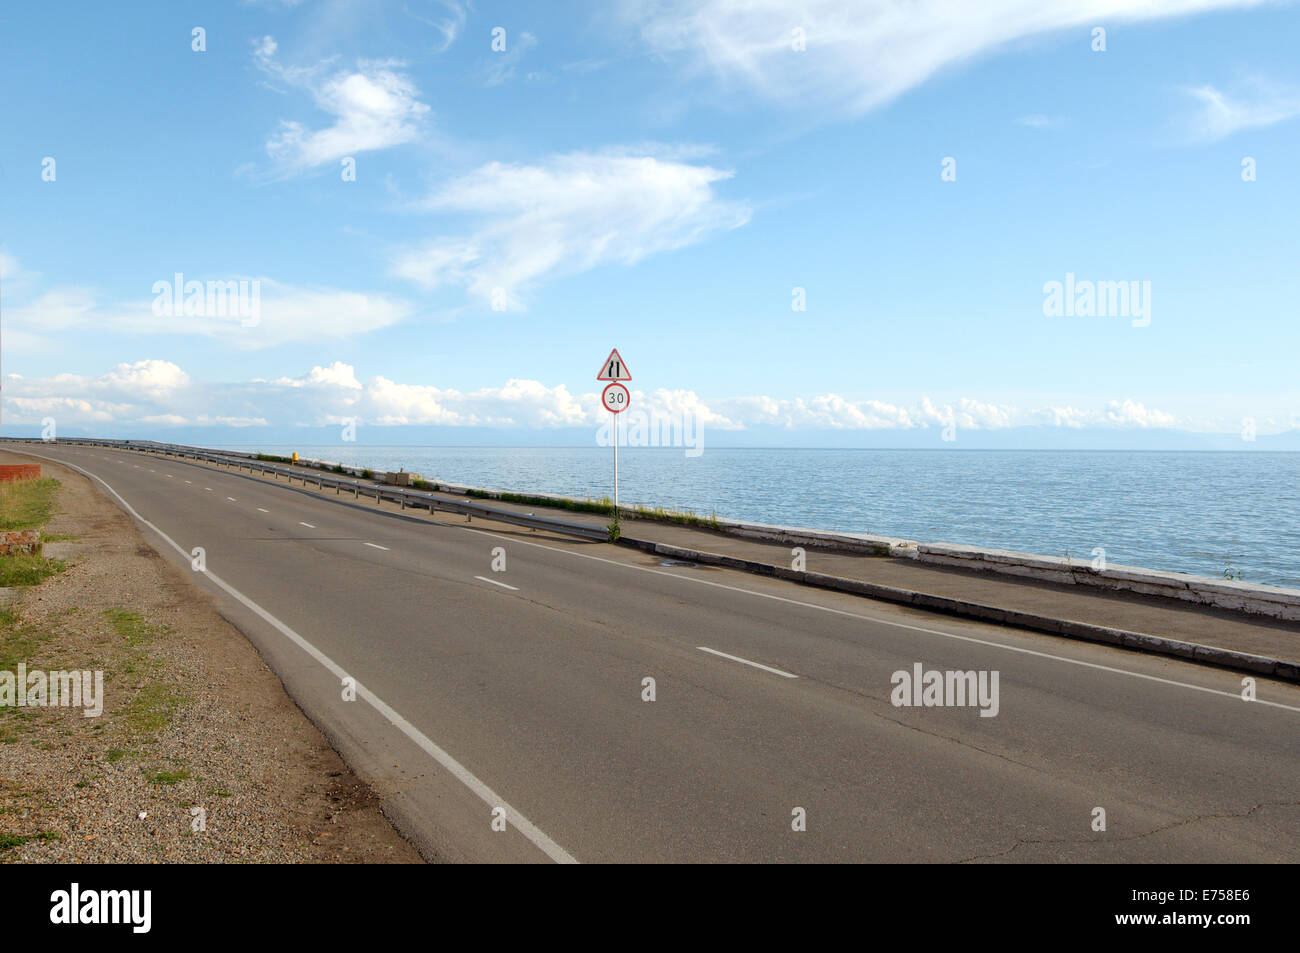 Straße und Straße Sig Geschwindigkeitsbegrenzung, Listwjanka, Irkutsky Bezirk, Region Irkutsk, Baikalsee, Sibirien, Russland Stockfoto